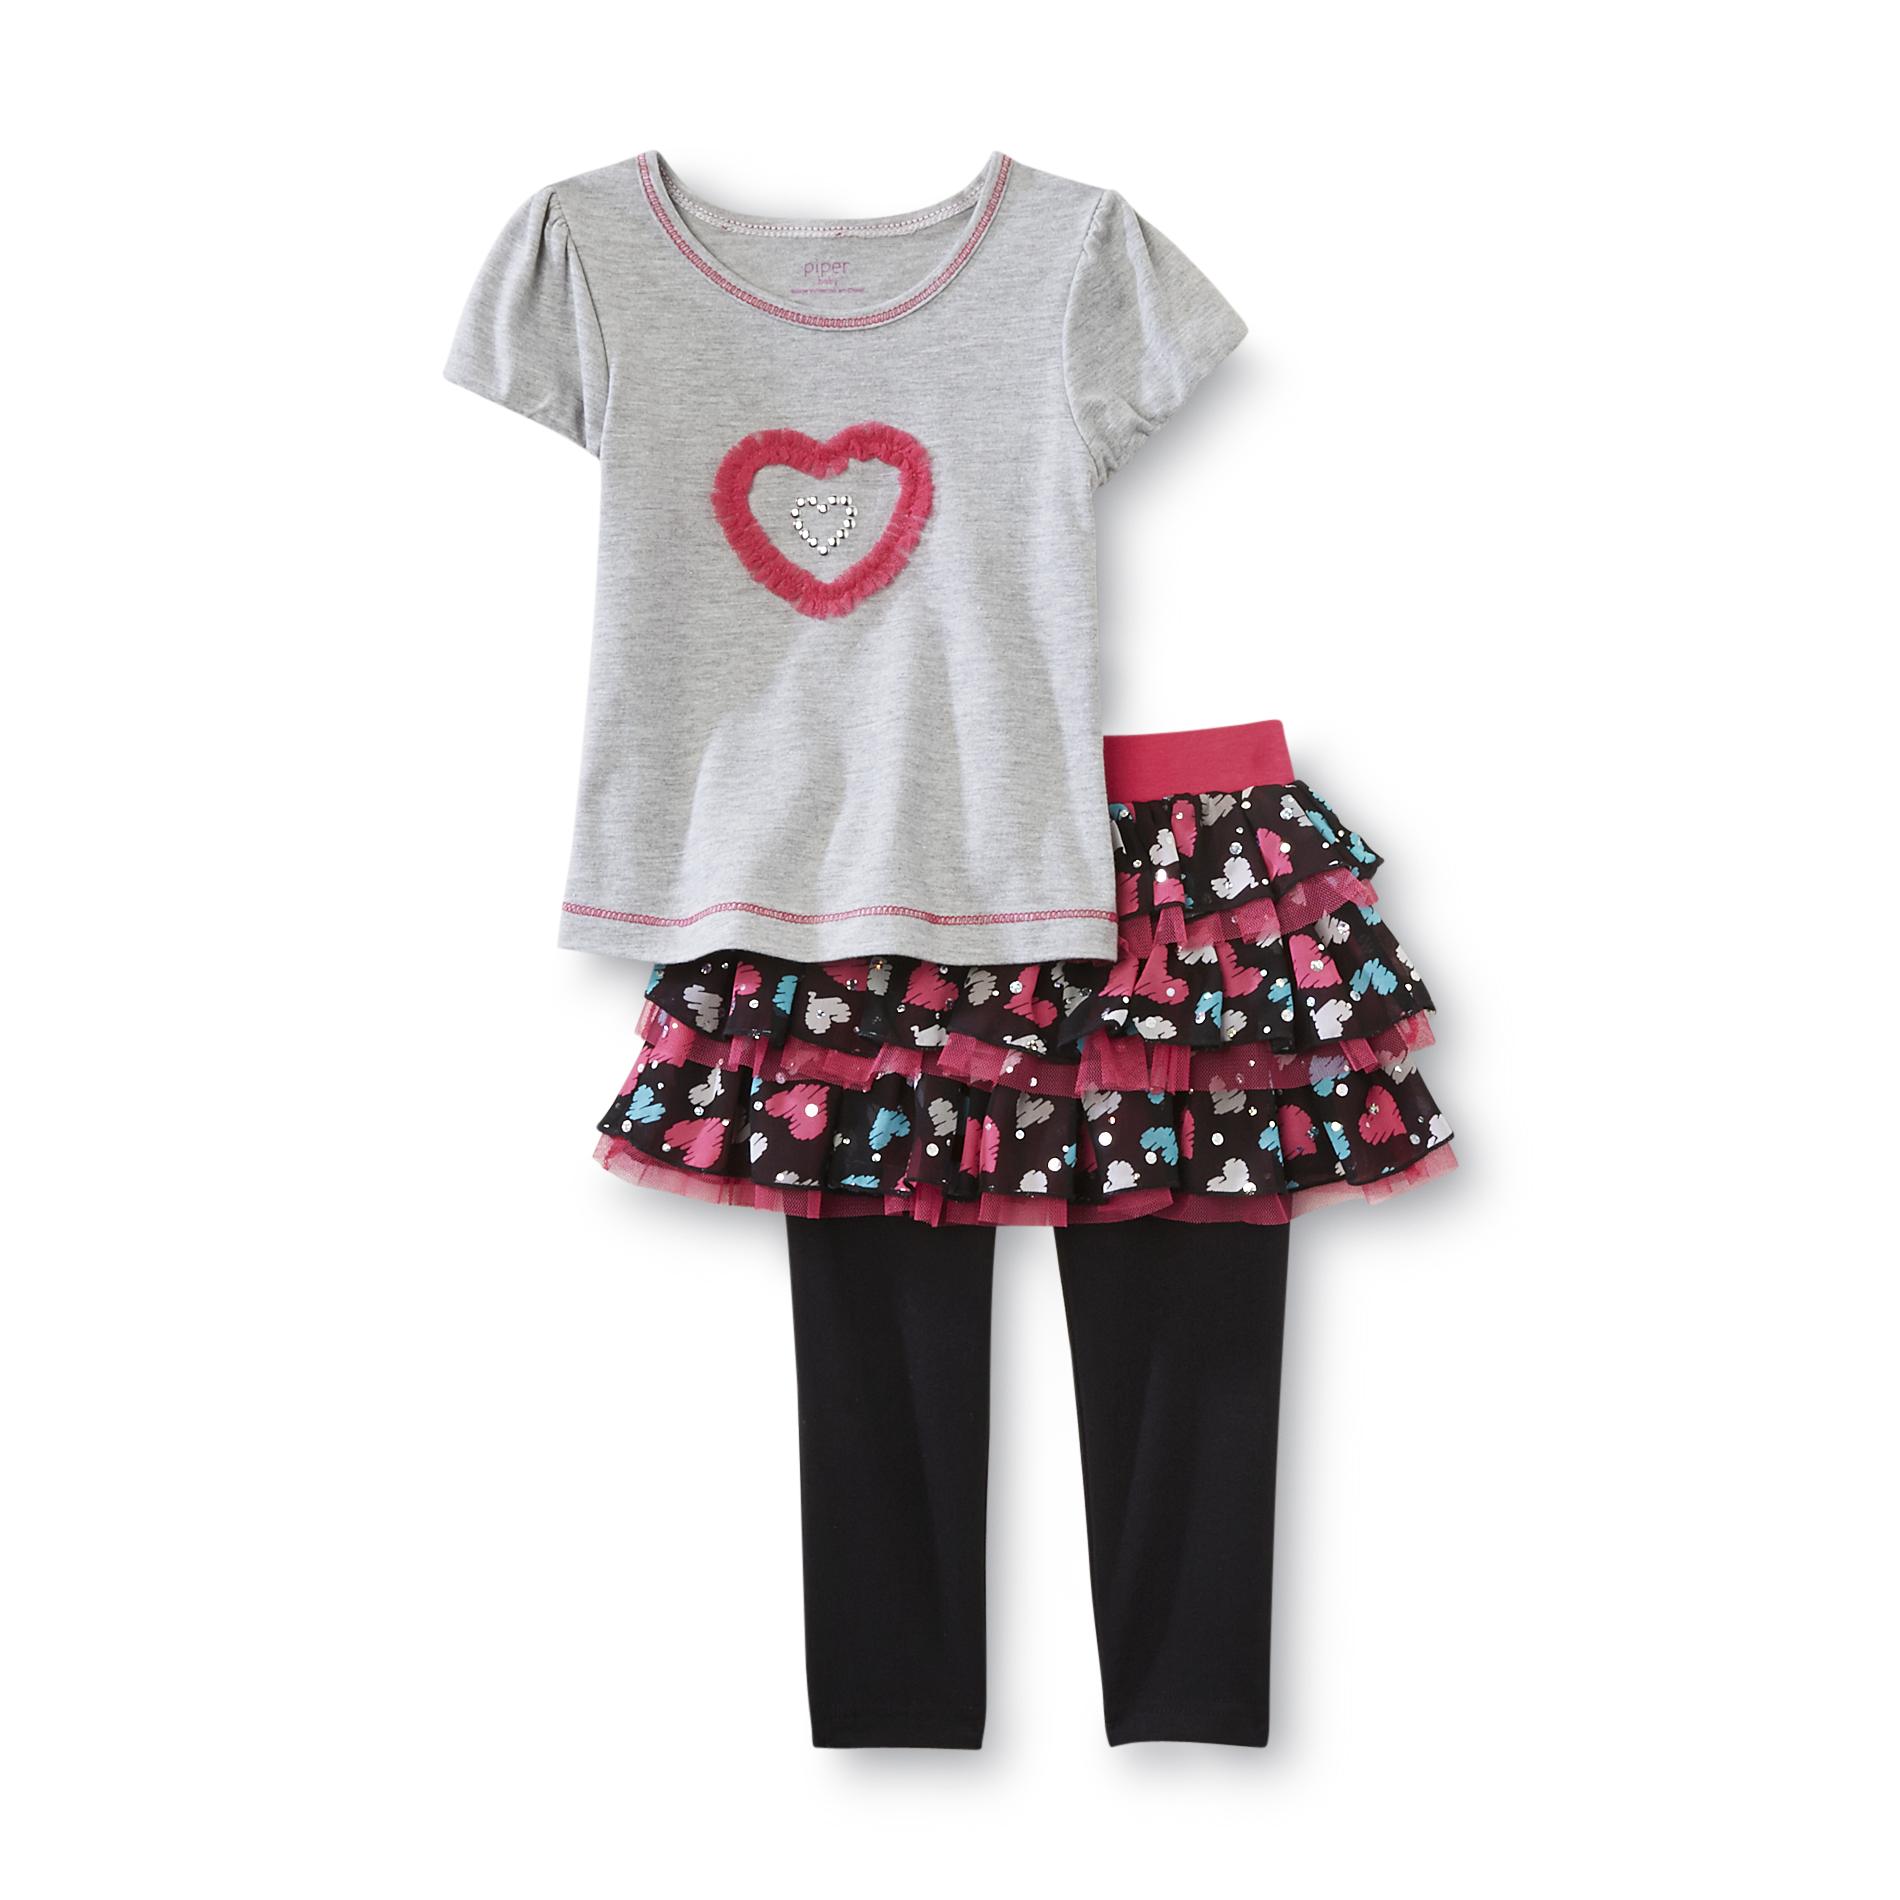 Piper Infant & Toddler Girl's Skeggings Set - Heart